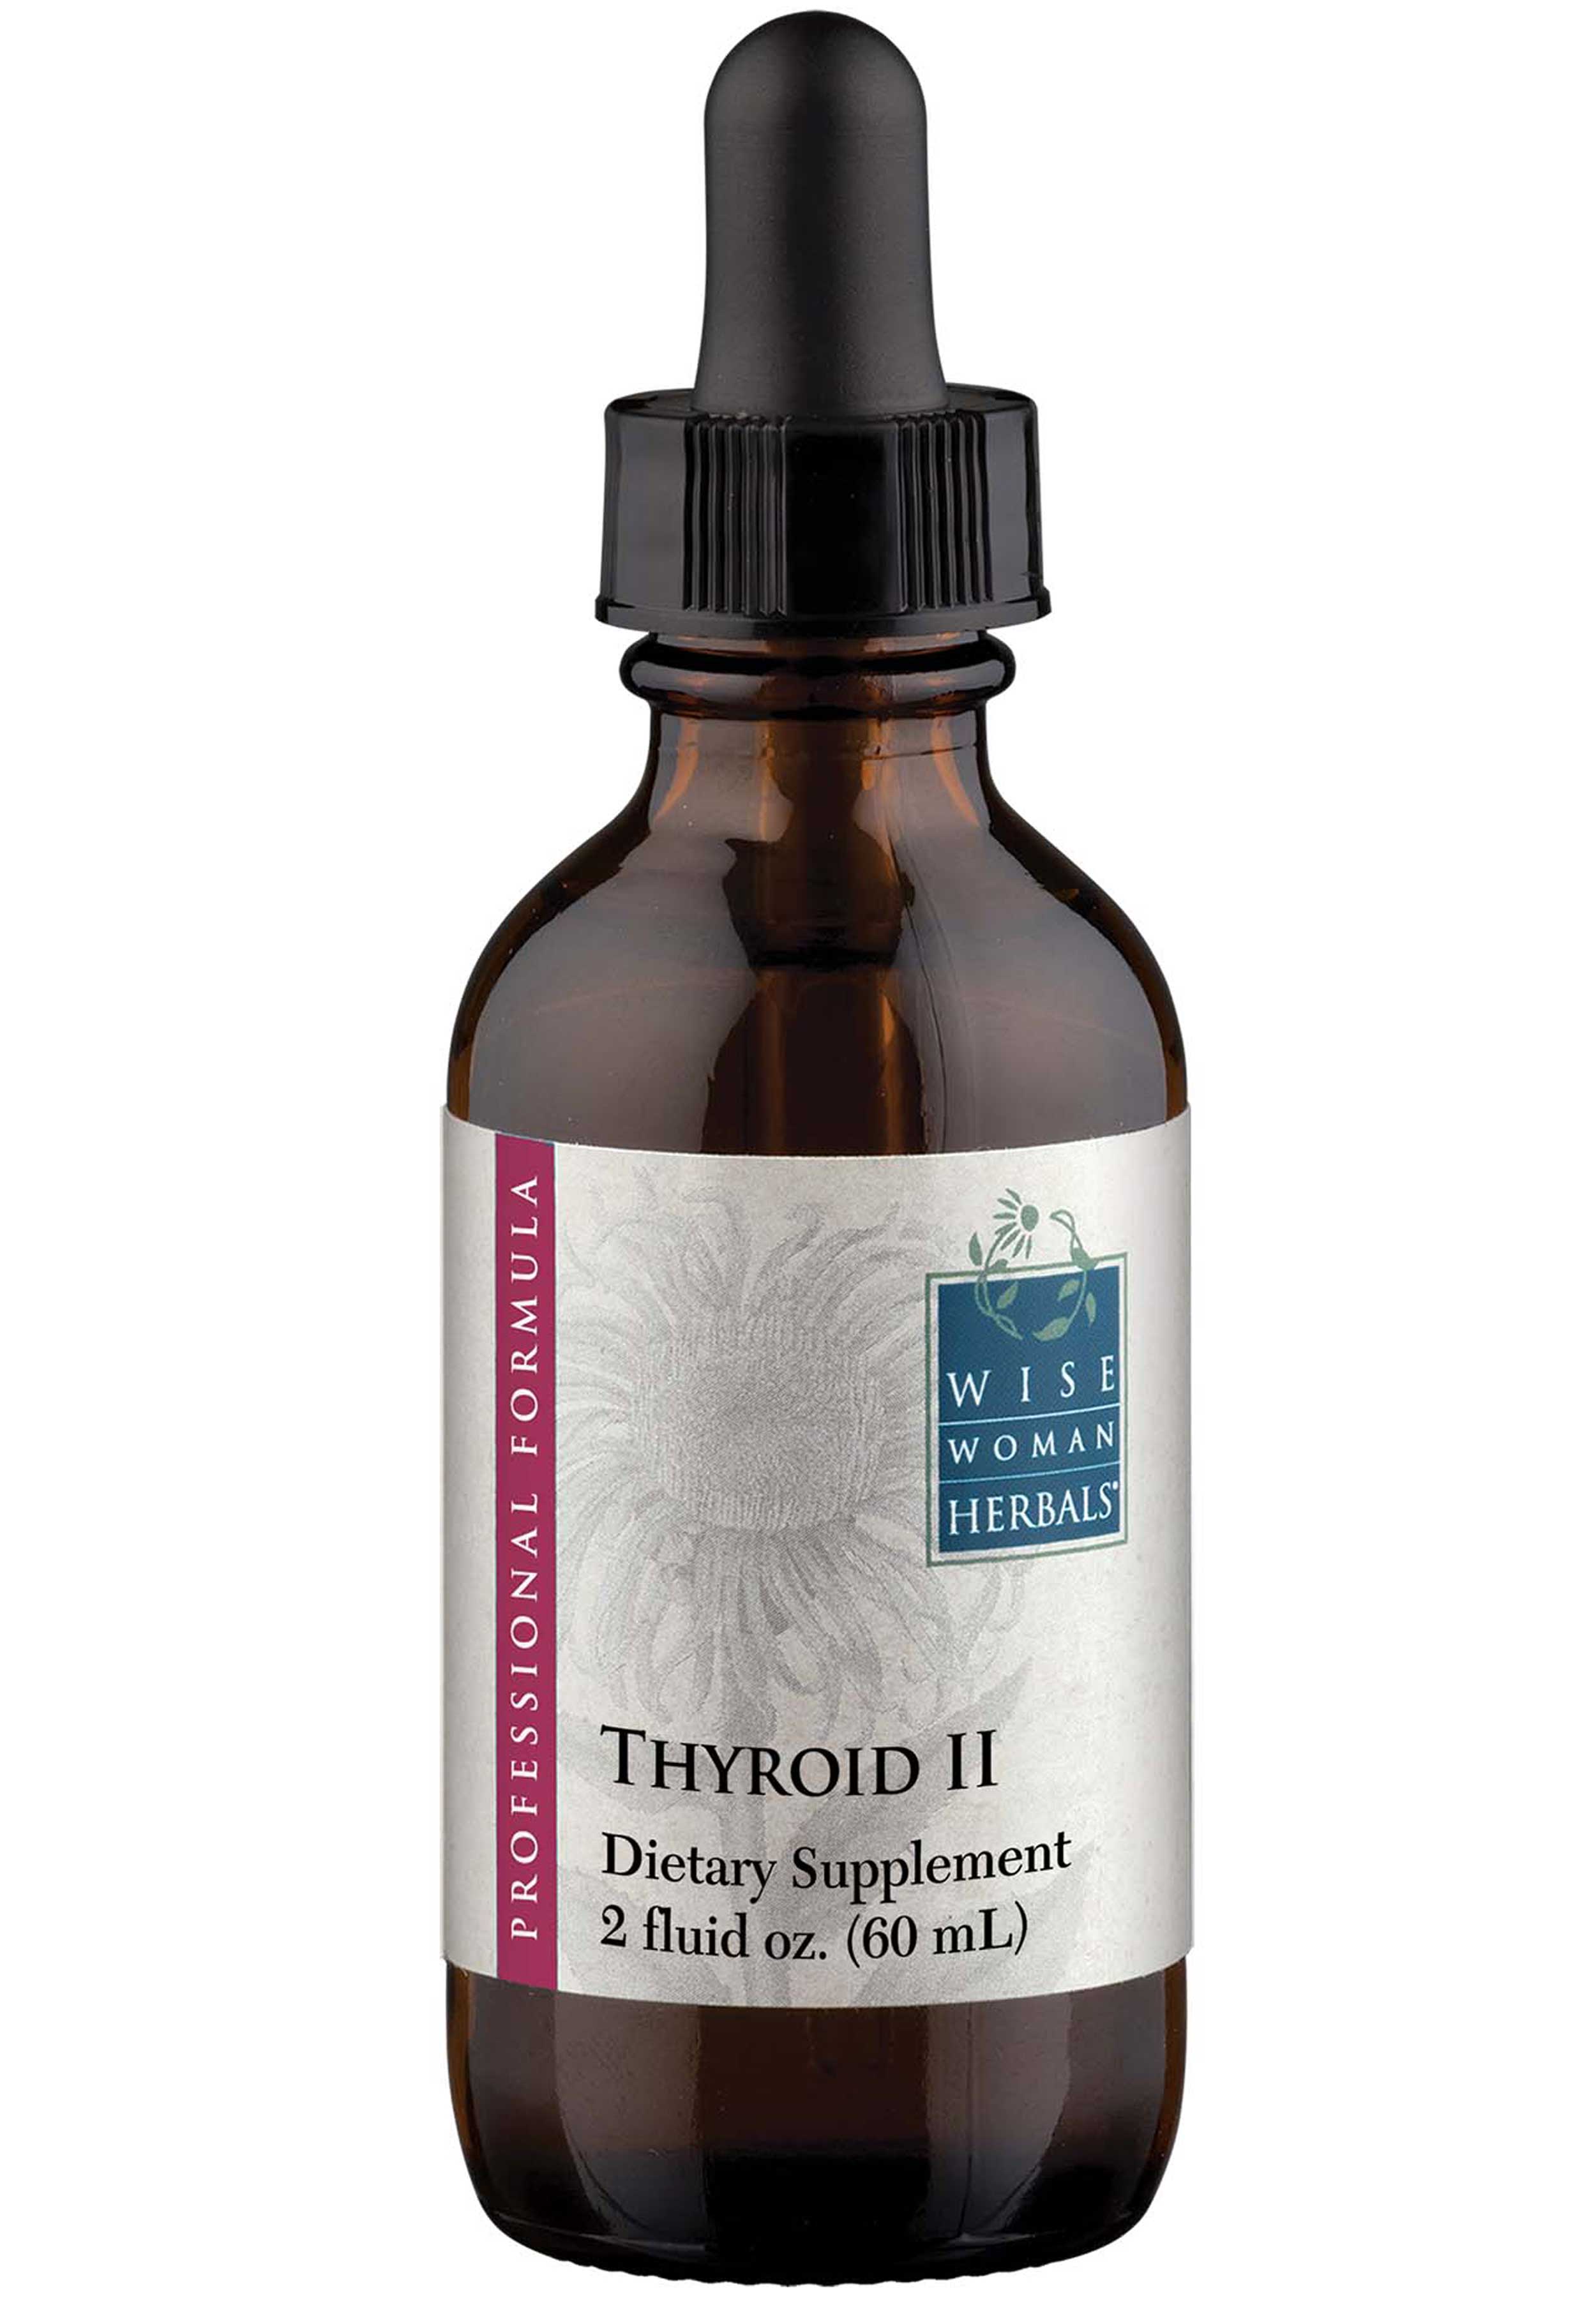 Wise Woman Herbals Thyroid II